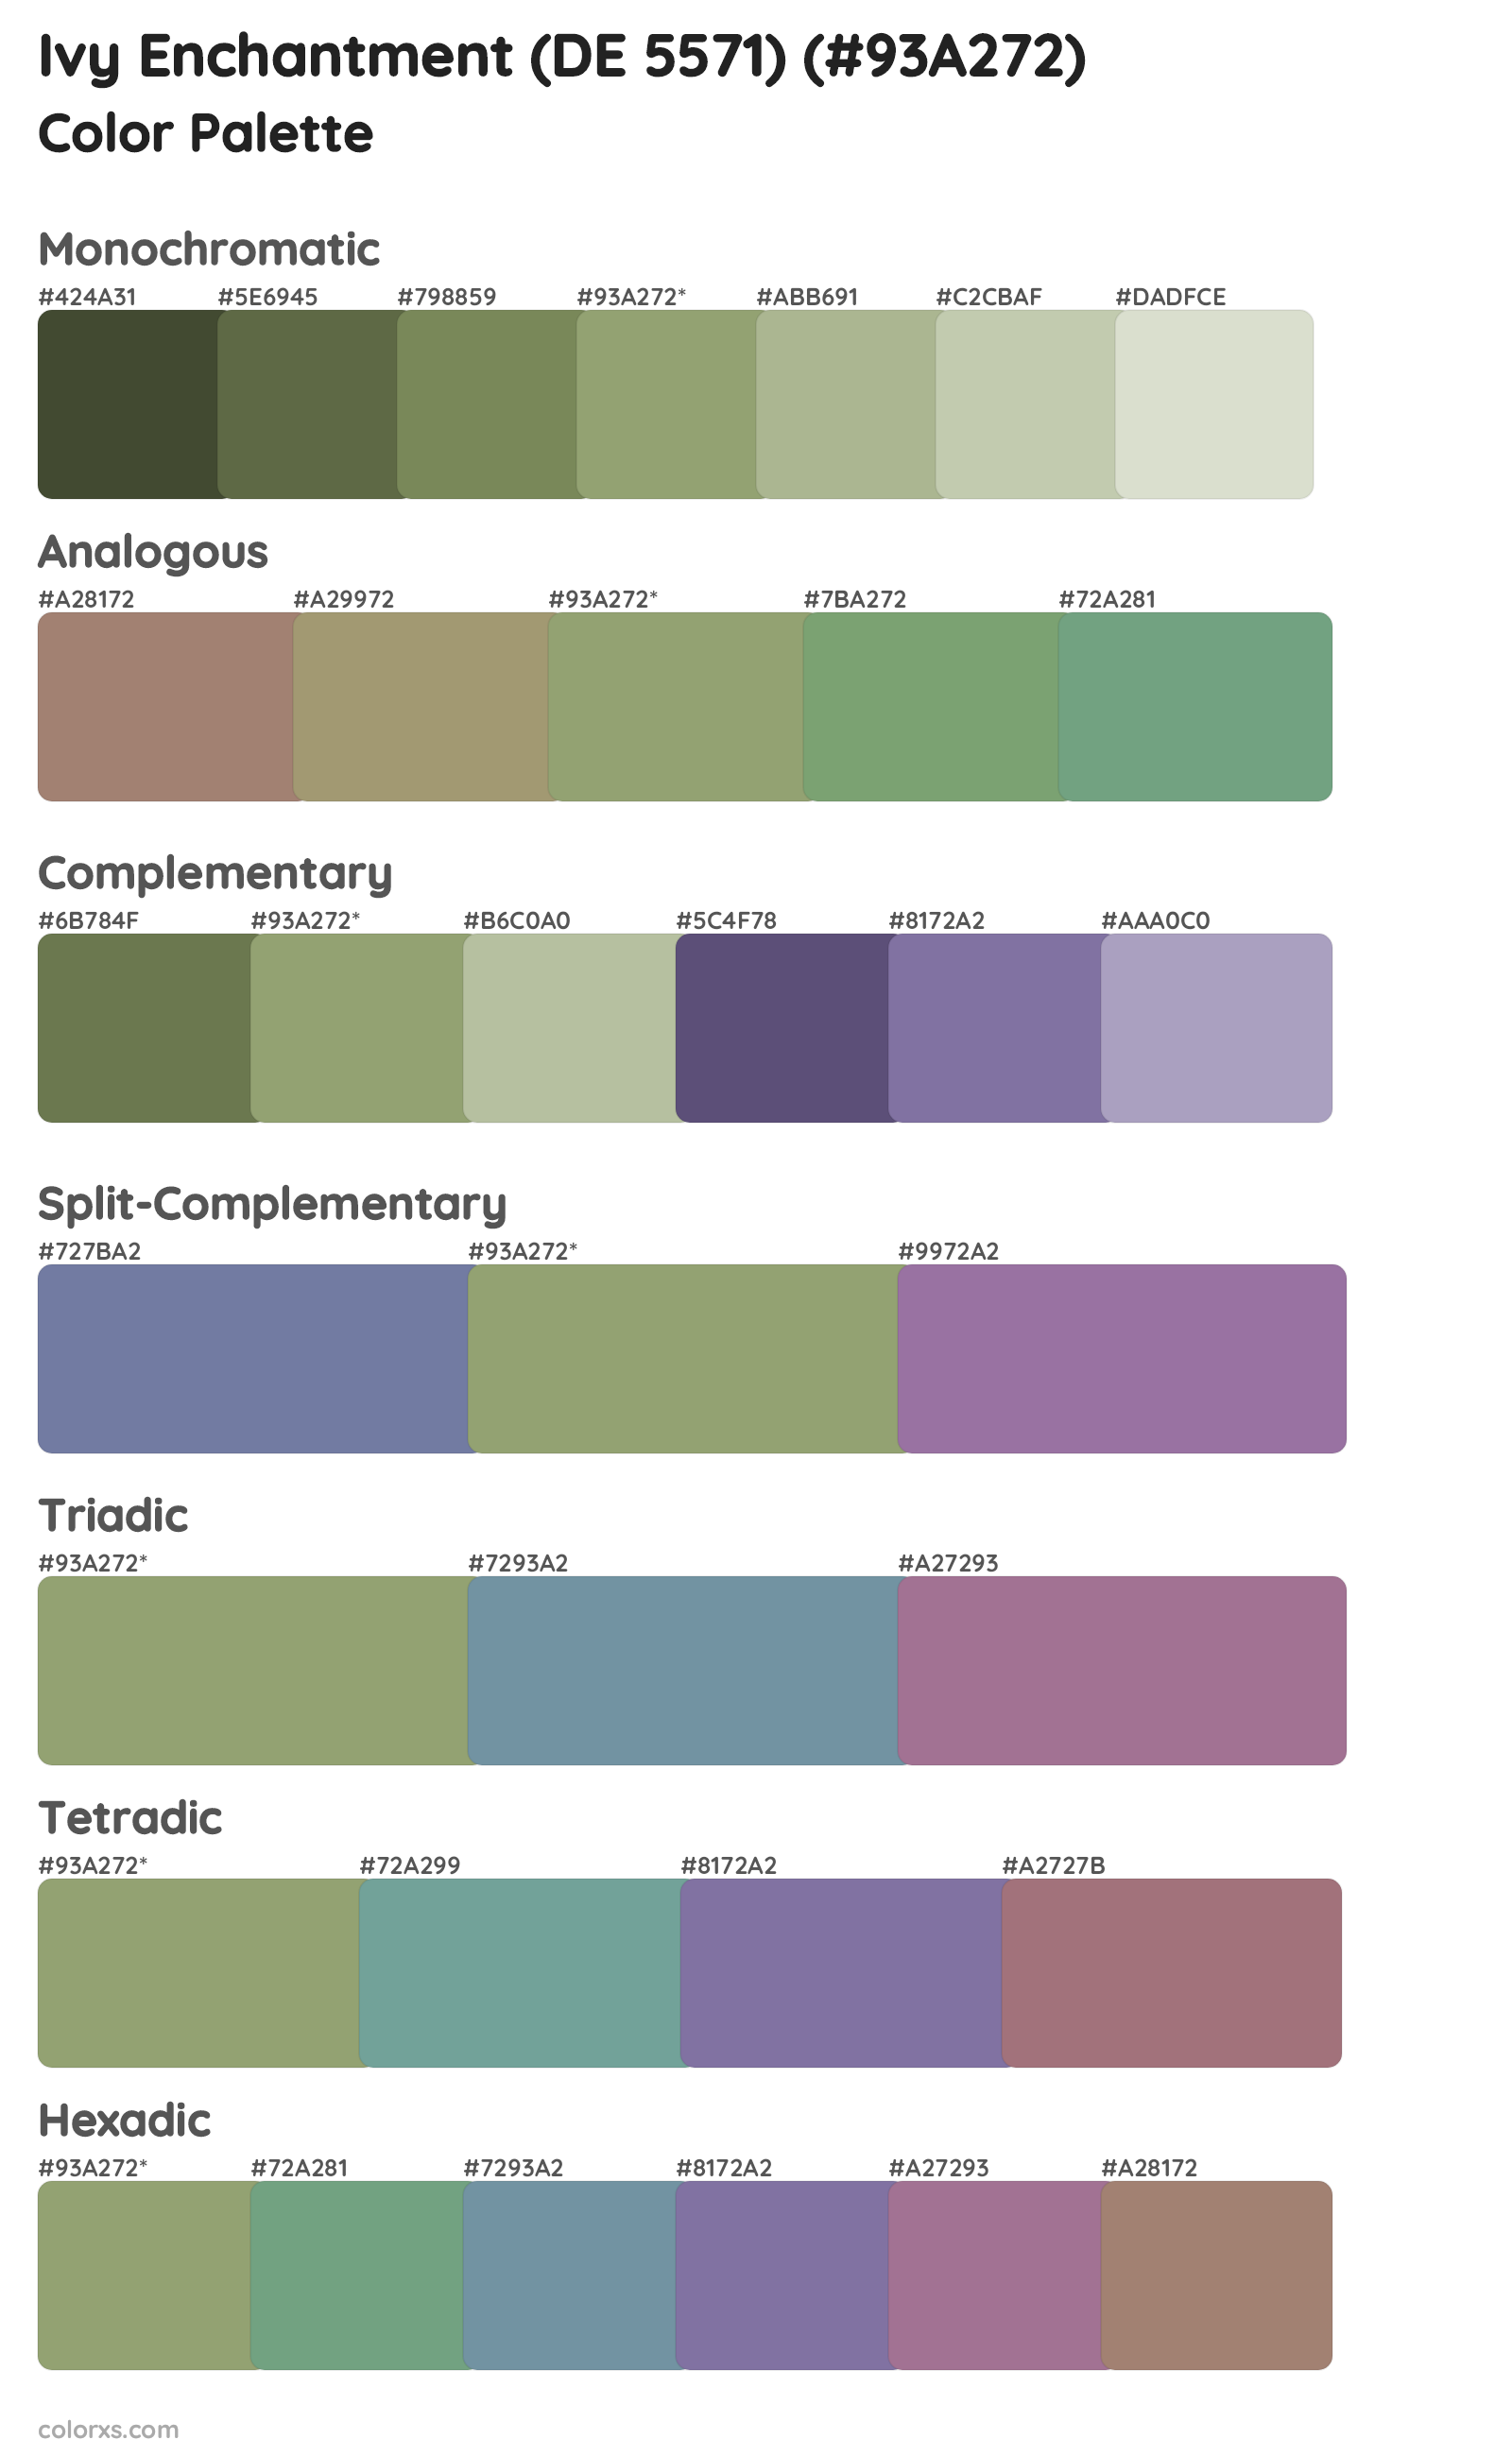 Ivy Enchantment (DE 5571) Color Scheme Palettes